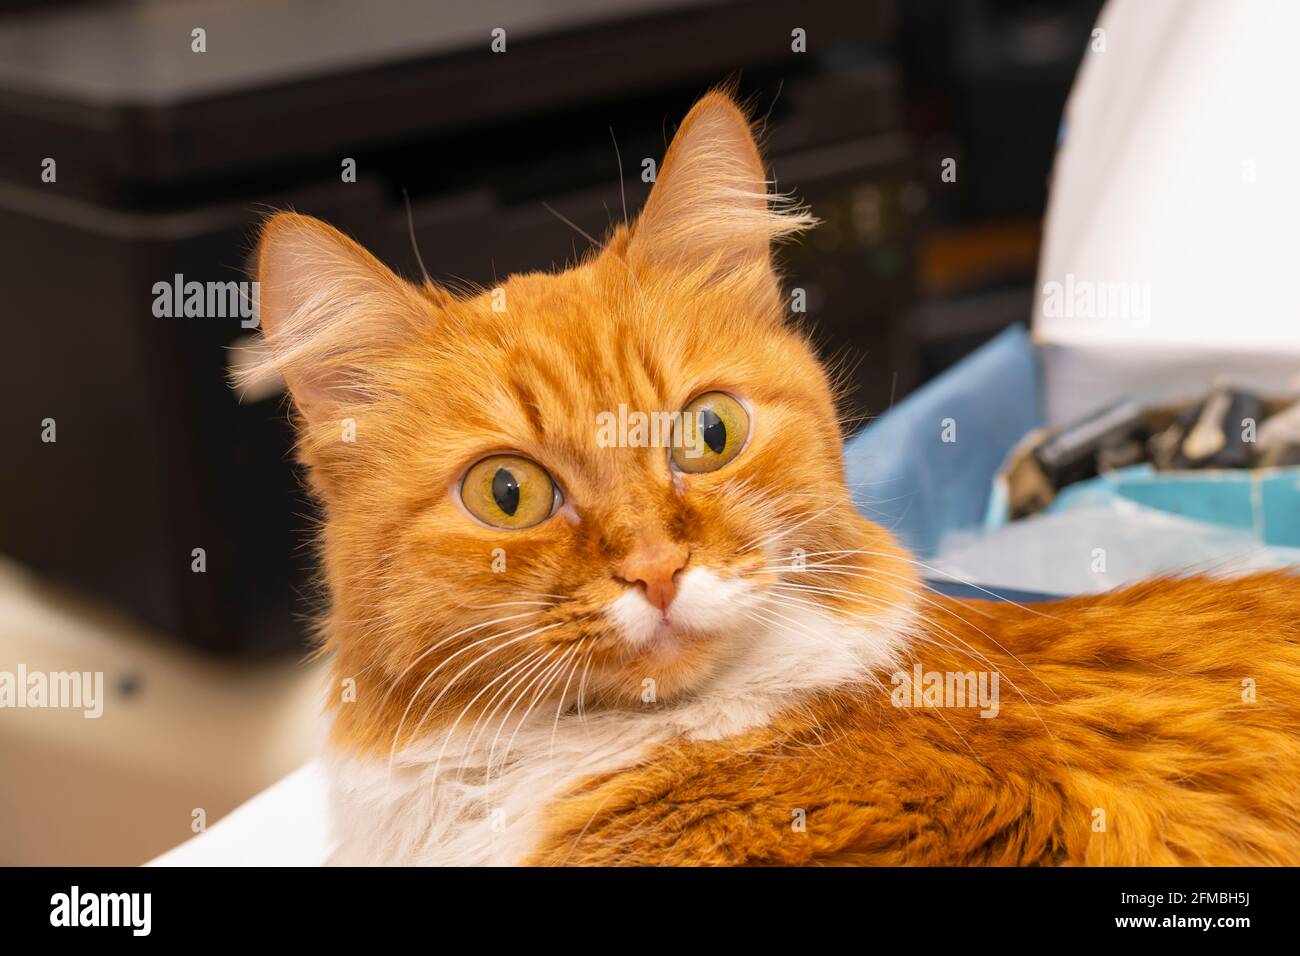 sorprendido, asustado, perplejo, tonto, el gato rojo miente con los ojos abiertos y abultados Foto de stock